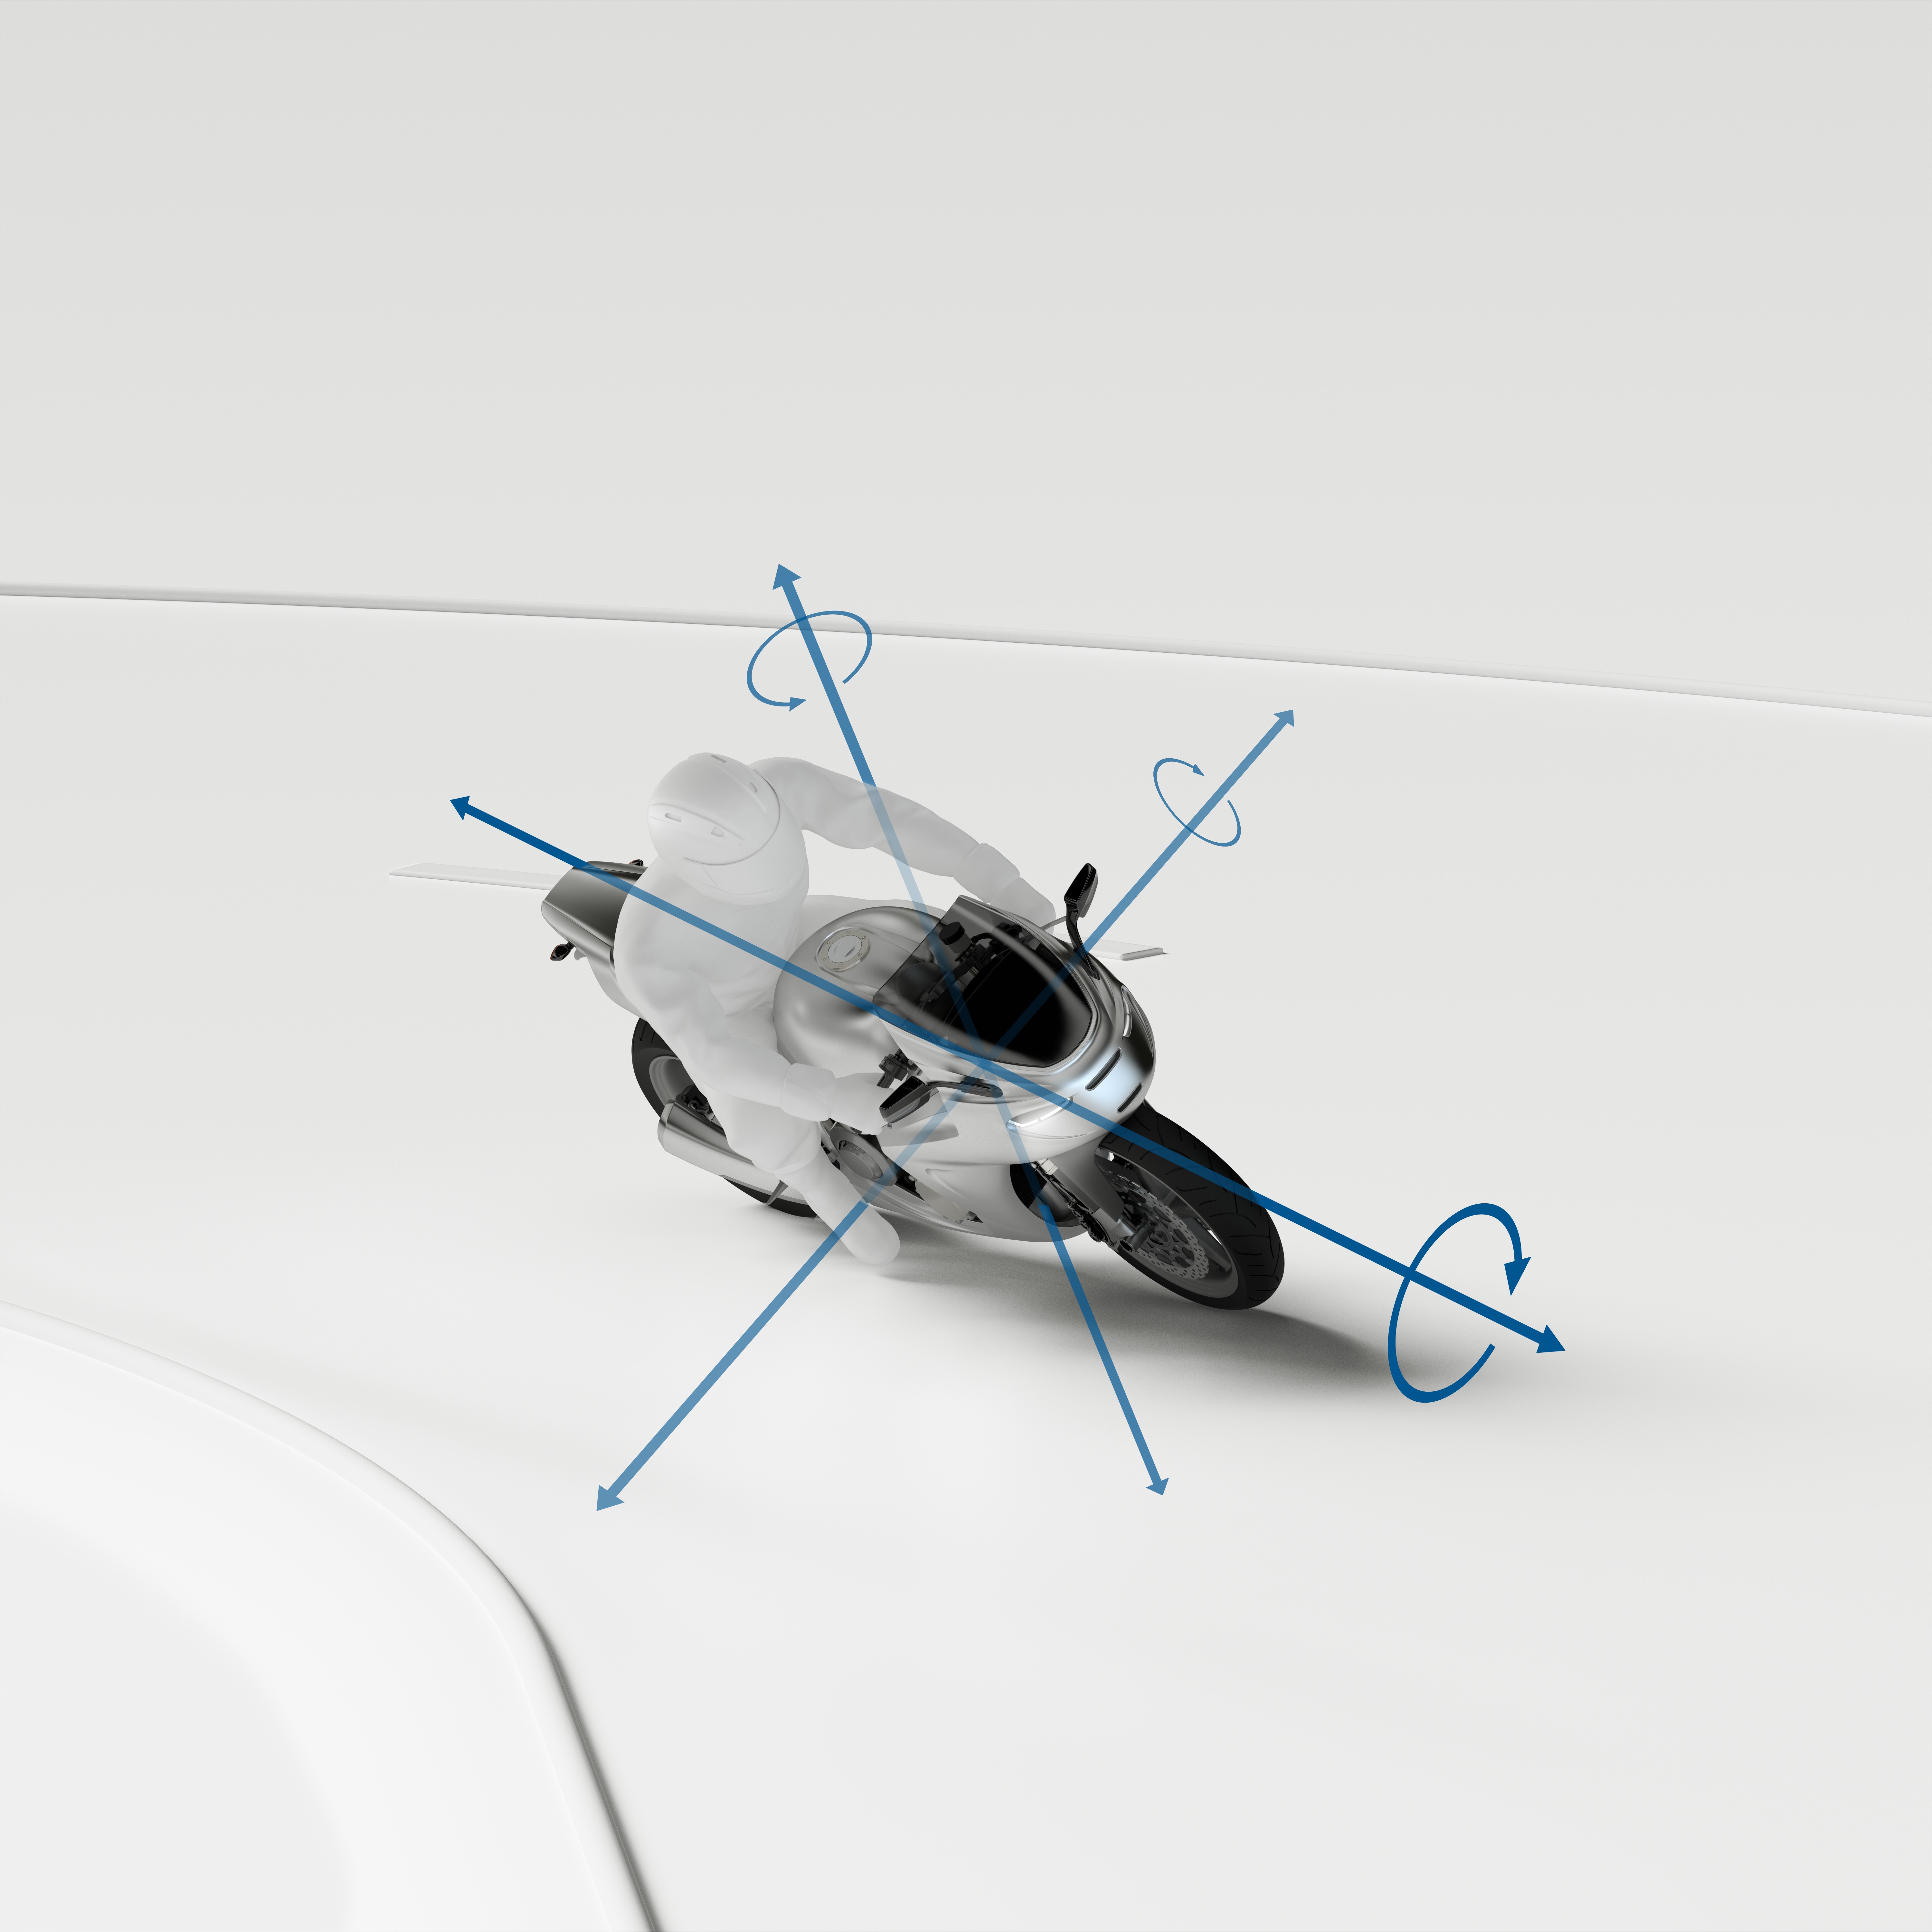 Sicurezza per tutti i segmenti: il Motorcycle Stability Control di Bosch ora è disponibile per i modelli sotto i 400 cc